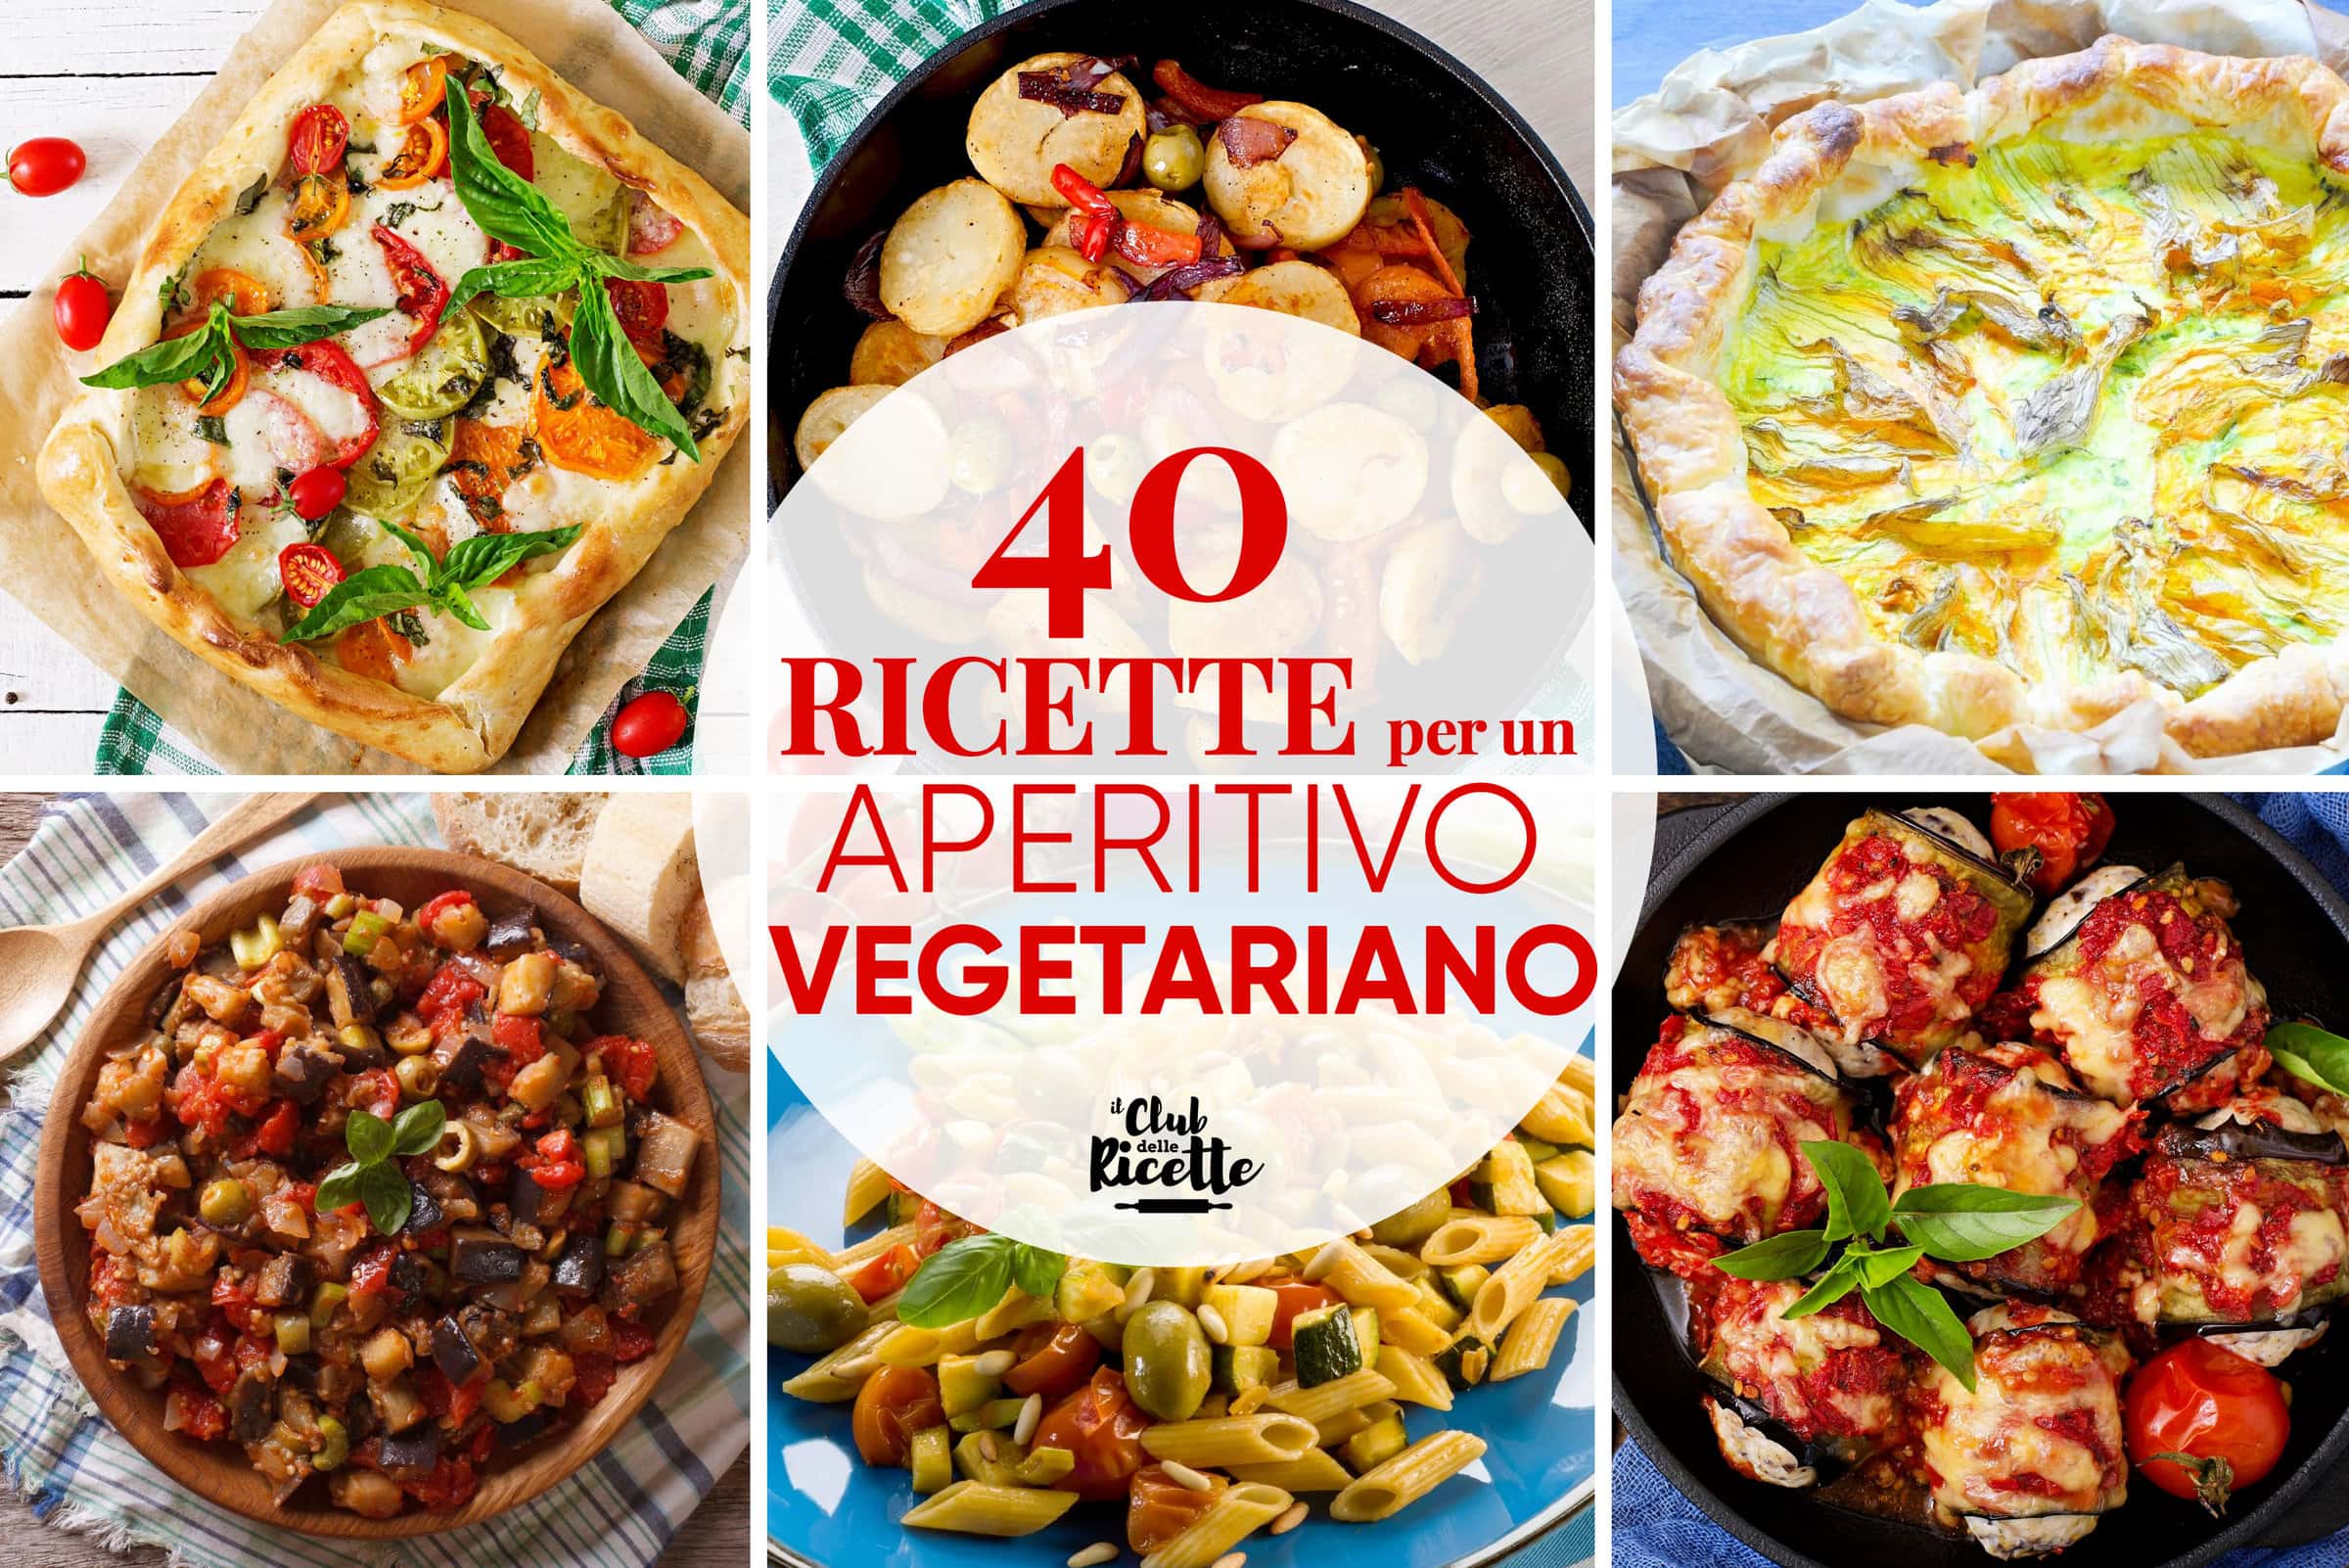 40 Ricette per un Aperitivo Vegetariano